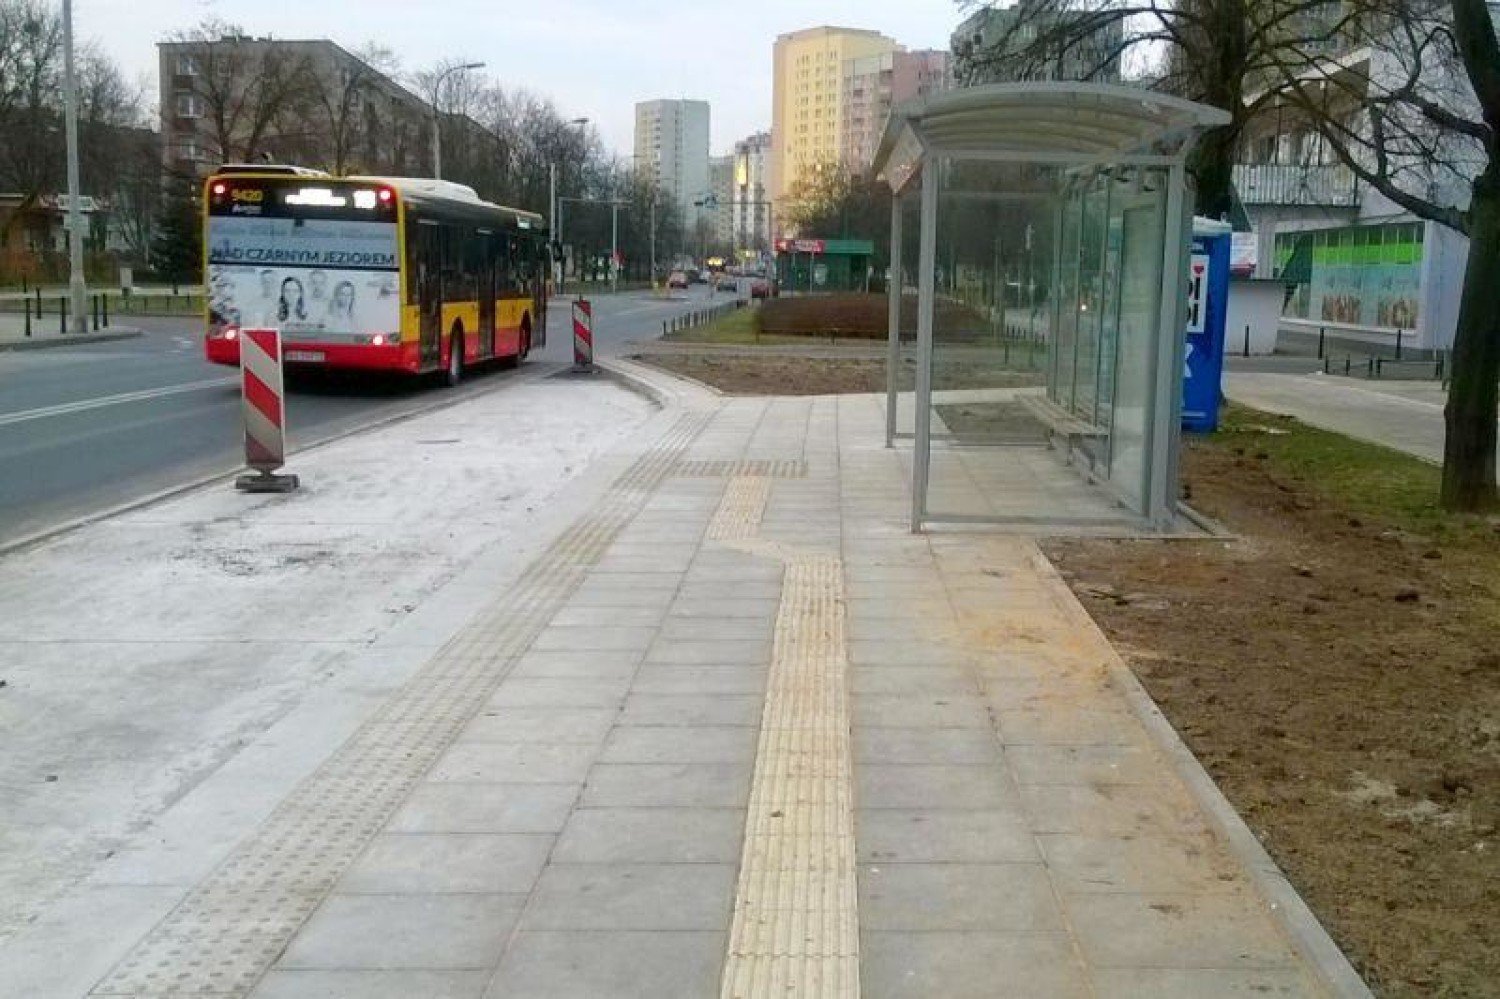 Nowe przystanki autobusowe. Powstały dzięki staraniom mieszkańców | Warszawa  Nasze Miasto